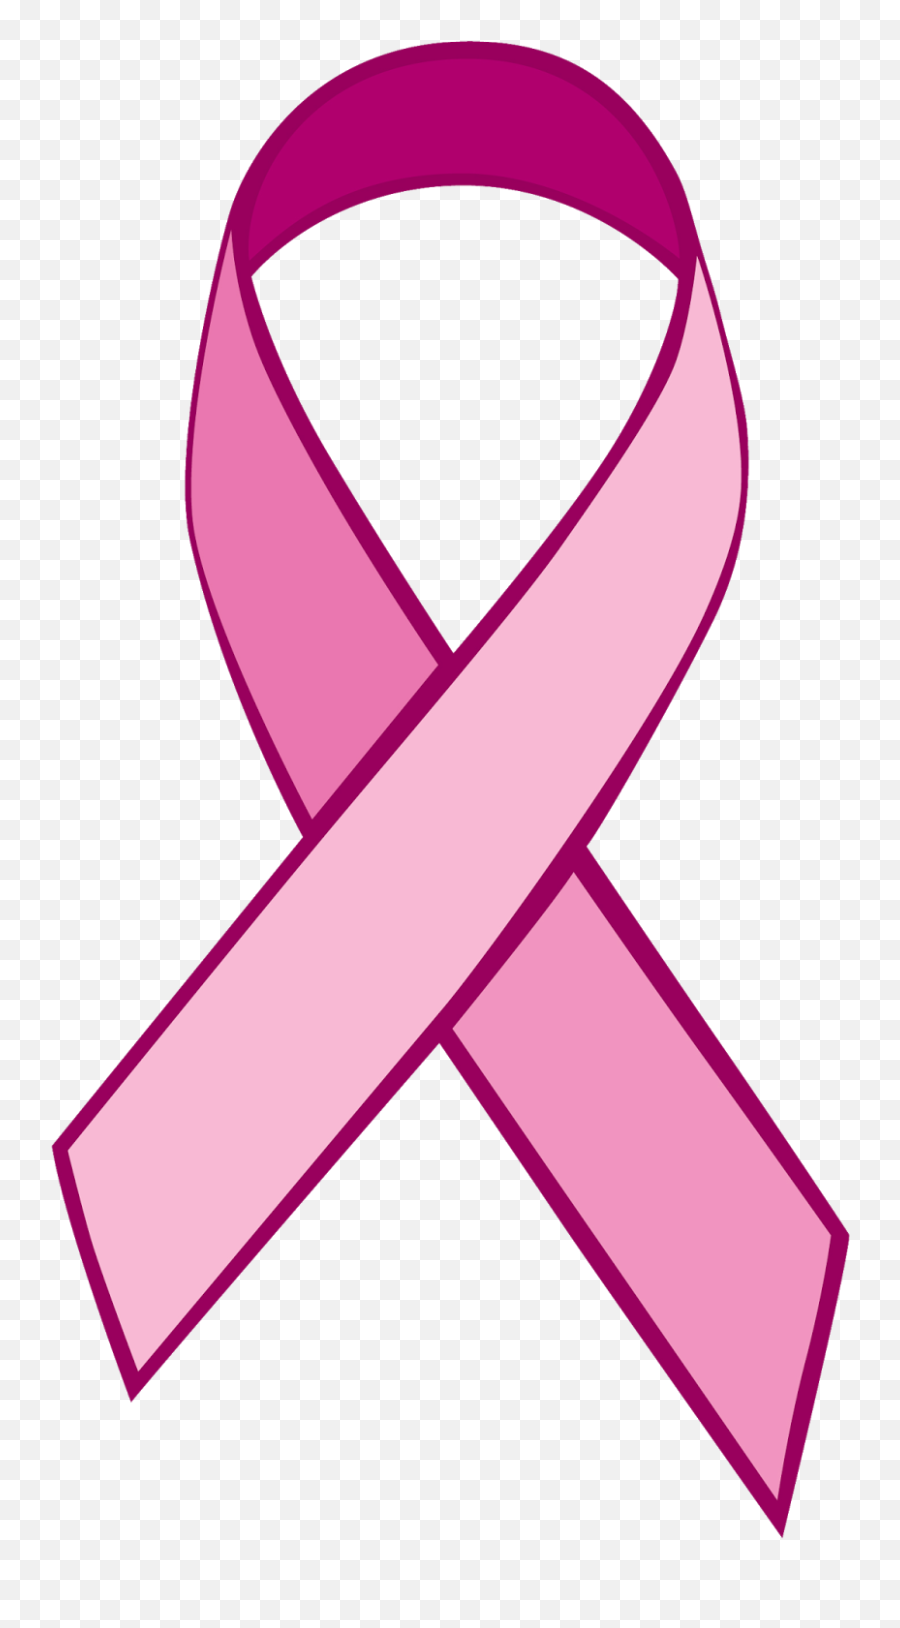 Download Cancer Png Image - Breast Cancer Awareness Month Breast Cancer Awareness Month Ribbon,Cancer Ribbon Transparent Background